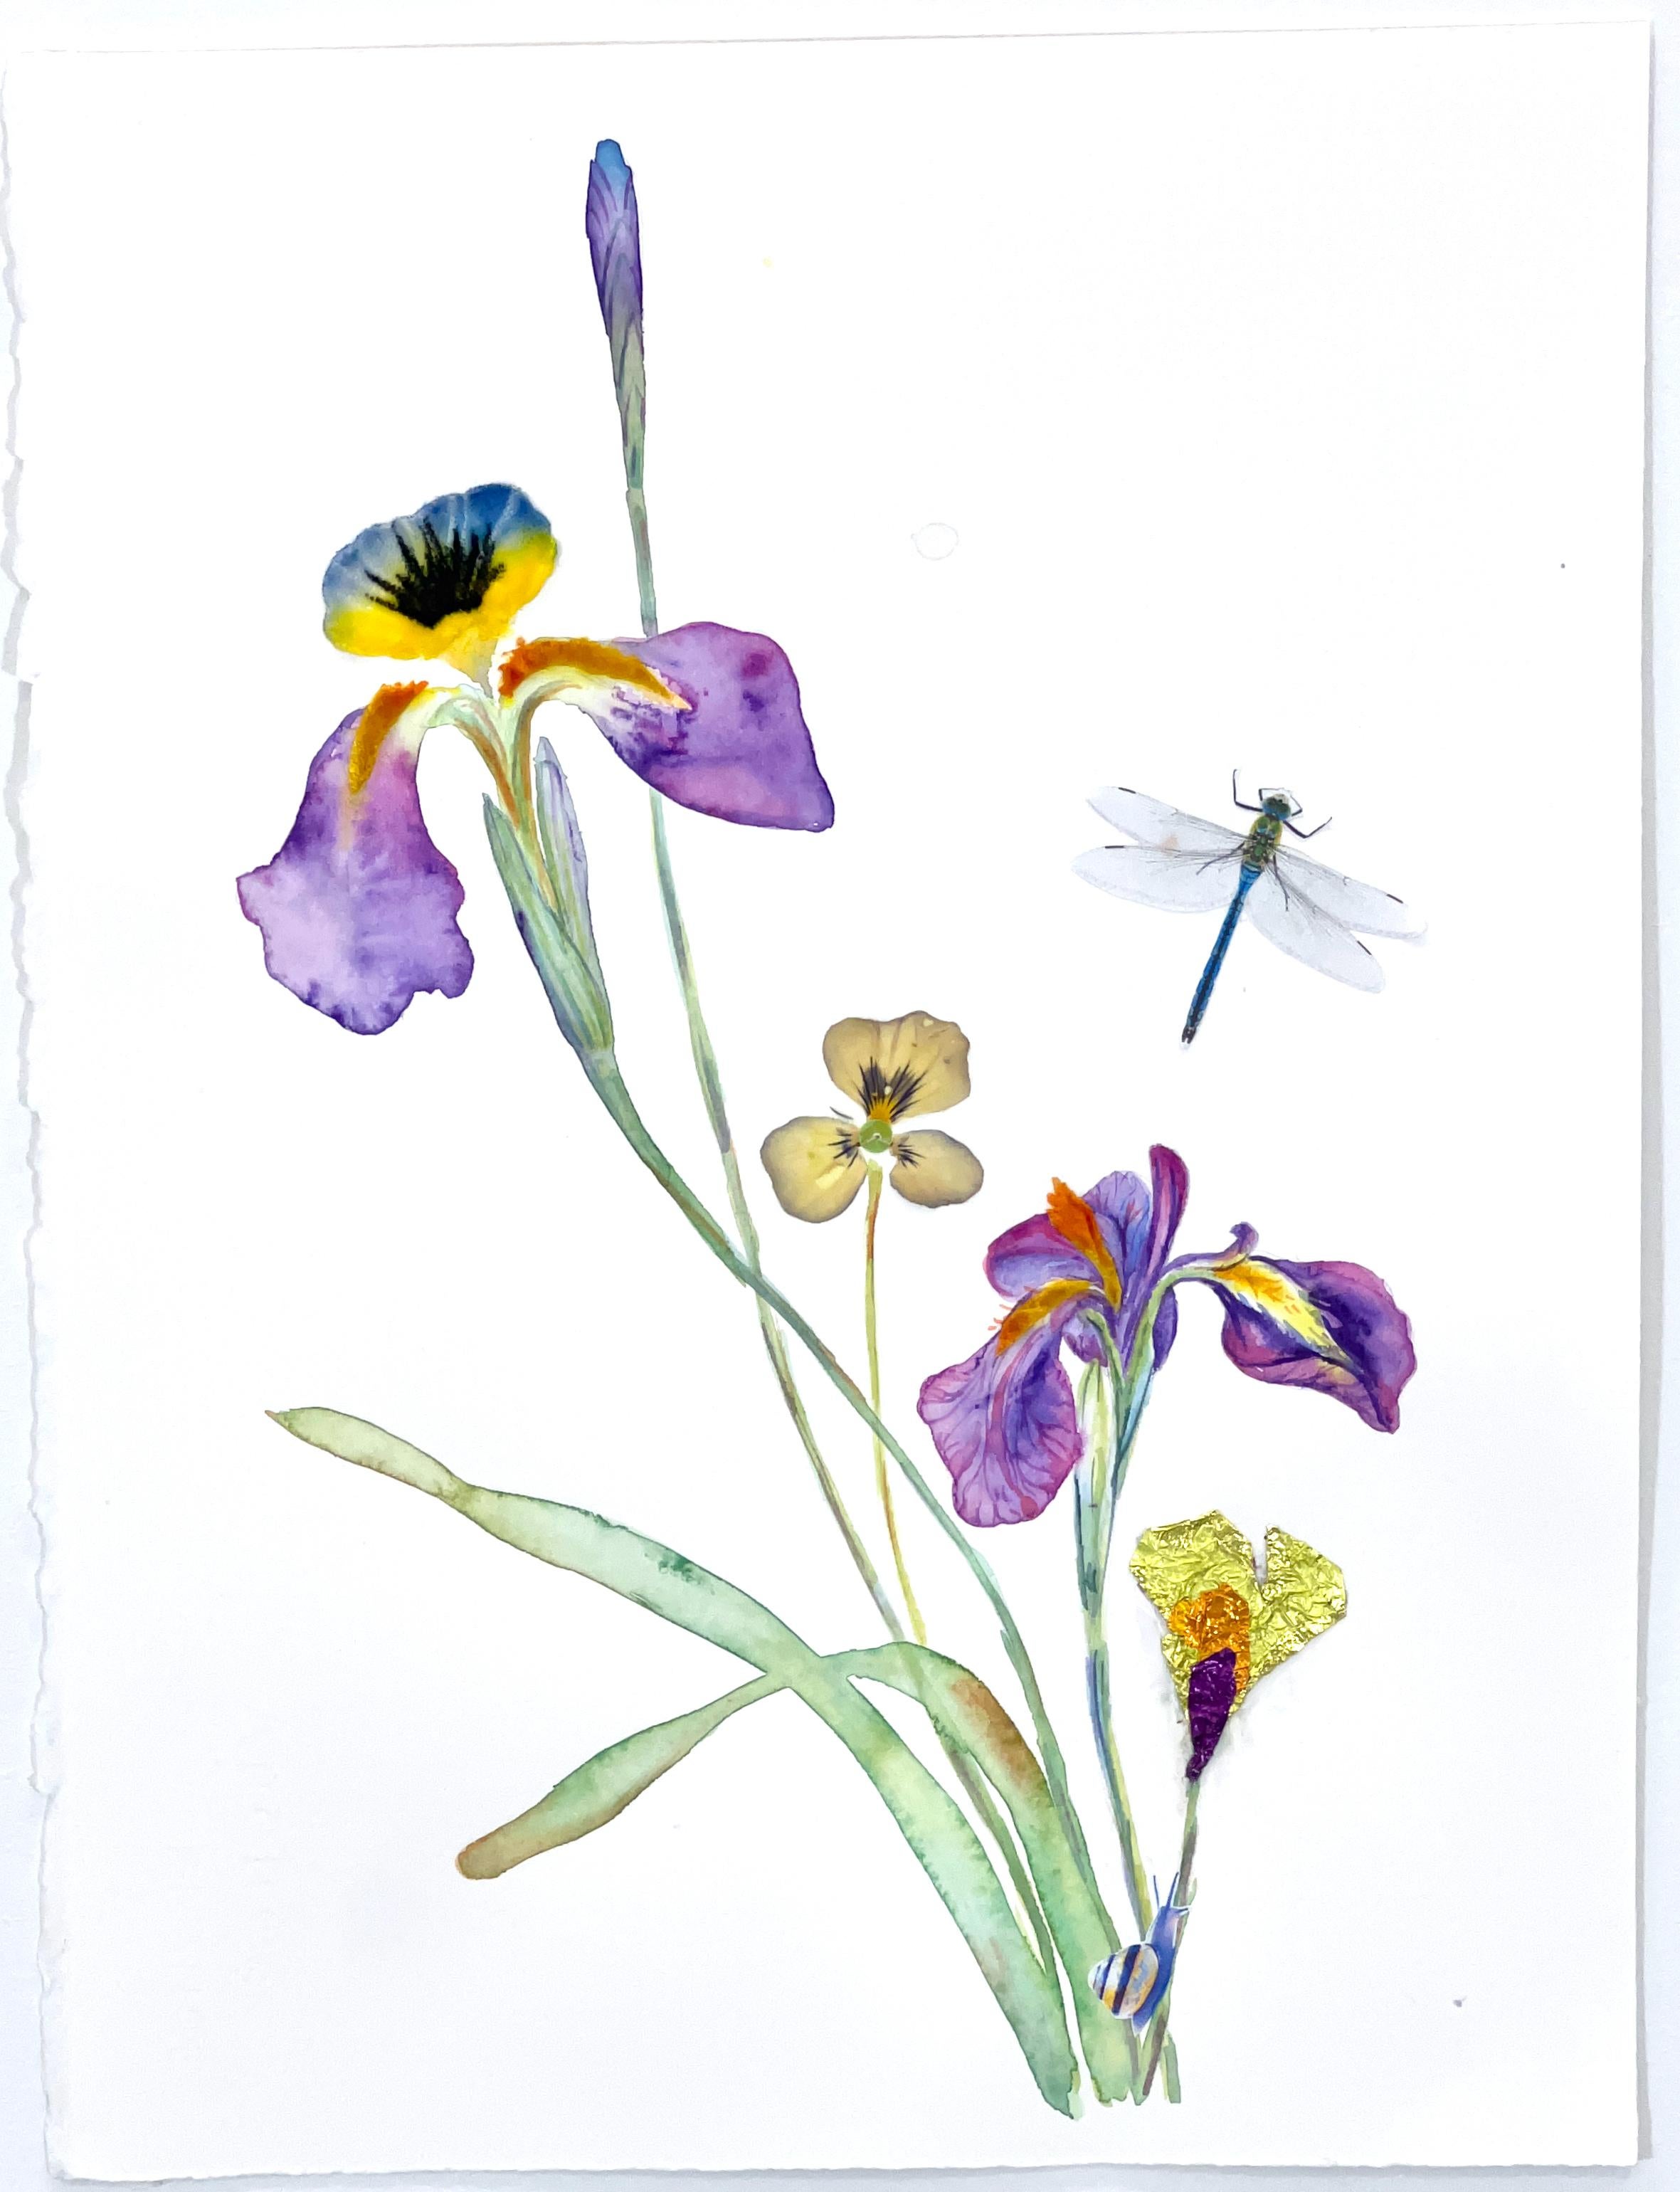 Marilla Palmer Waiting for Iris (Waiting for Iris) - Aquarelle et fleurs presses sur papier